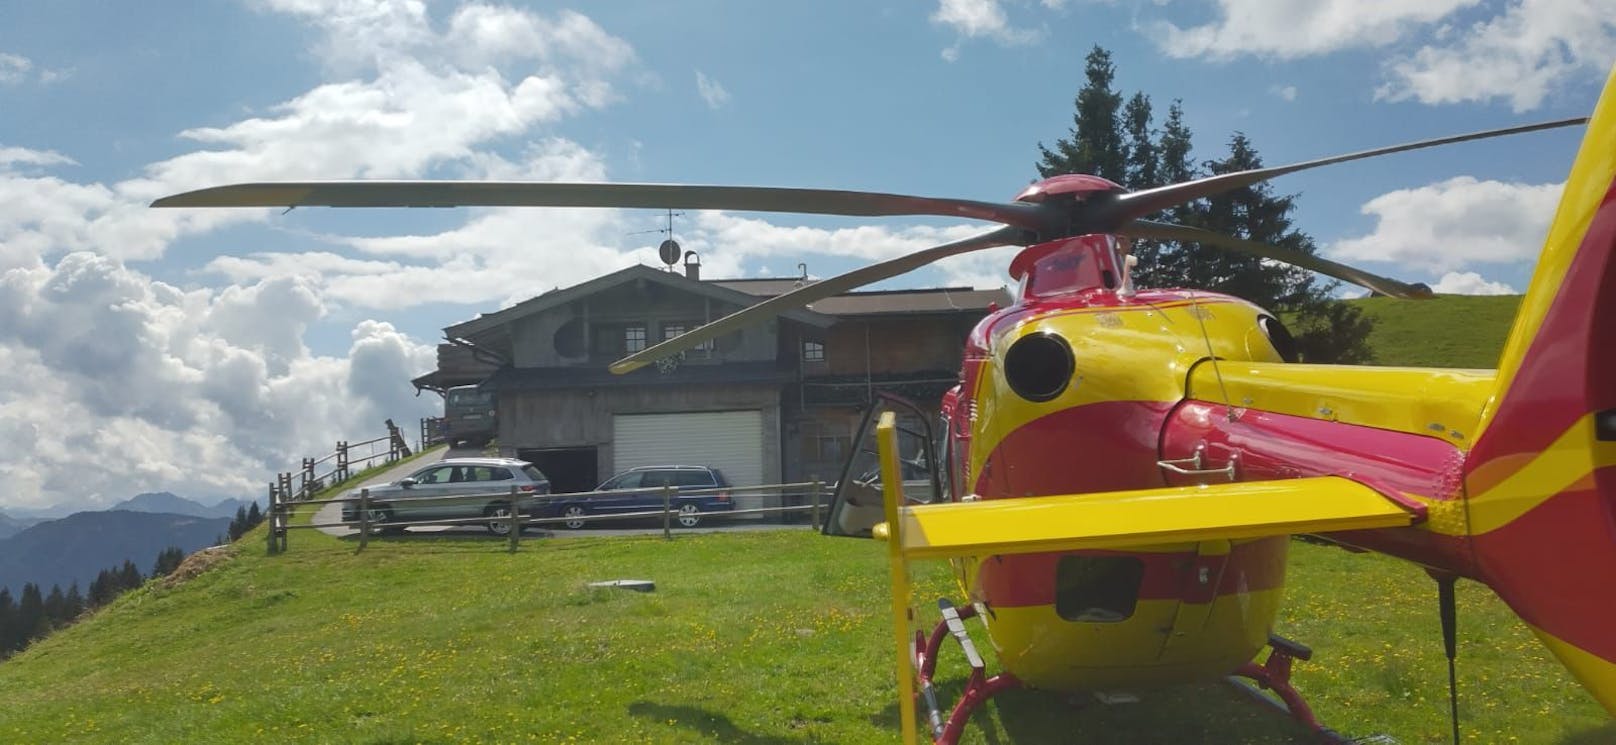 Das Kind wurde mit dem Rettungshubschrauber in das Krankenhaus Kufstein geflogen.